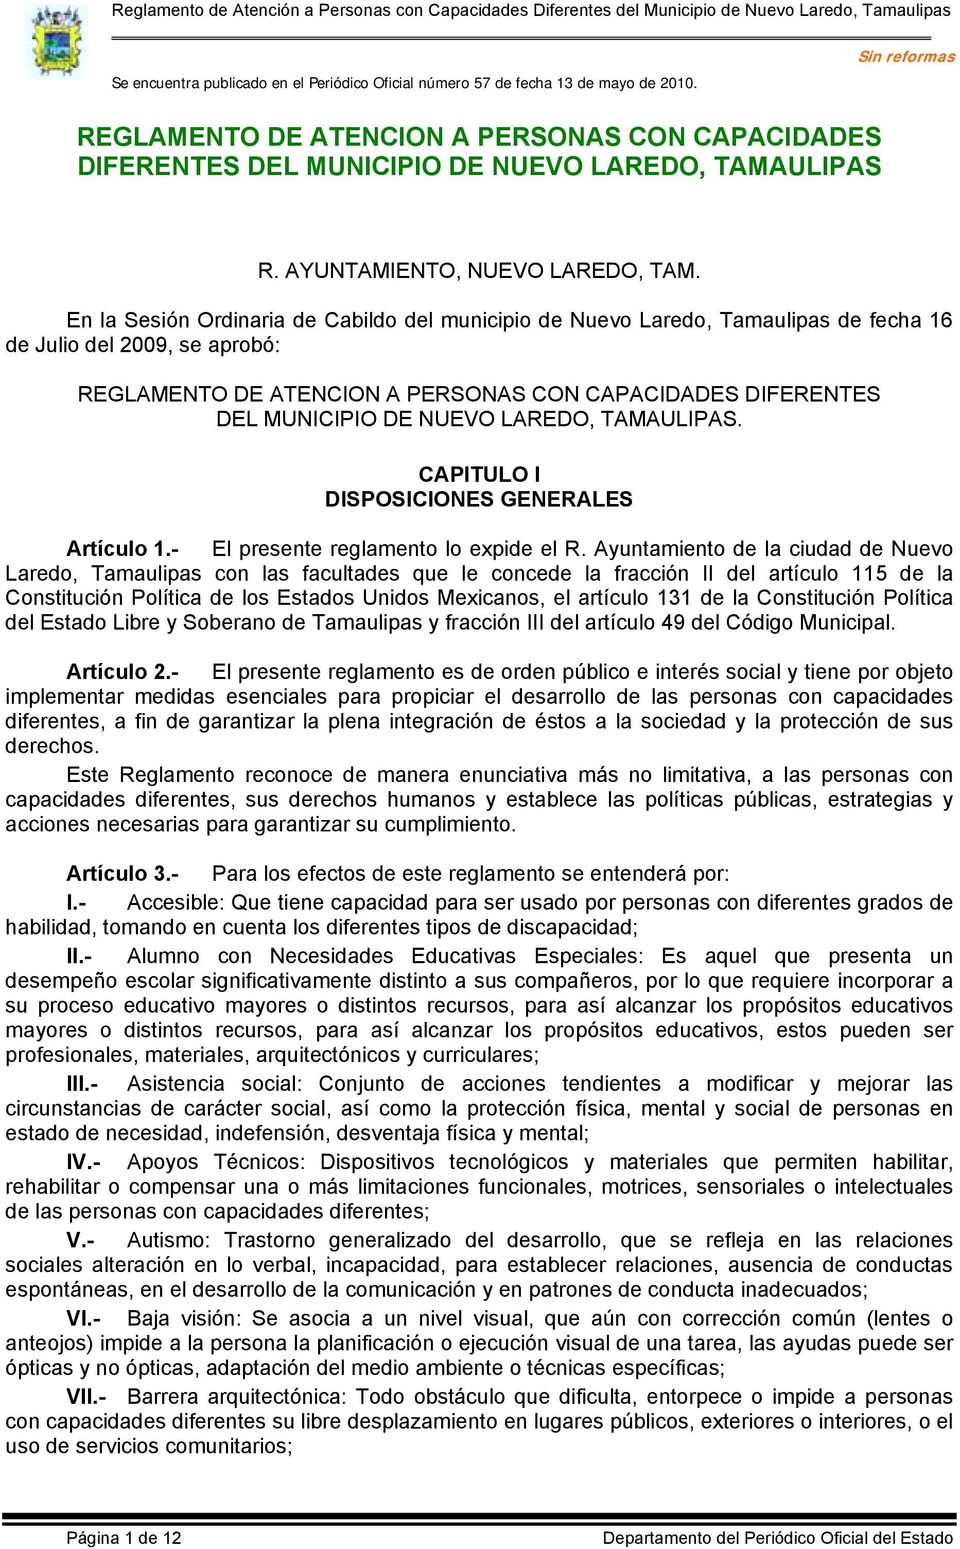 En la Sesión Ordinaria de Cabildo del municipio de Nuevo Laredo, Tamaulipas de fecha 16 de Julio del 2009, se aprobó: REGLAMENTO DE ATENCION A PERSONAS CON CAPACIDADES DIFERENTES DEL MUNICIPIO DE